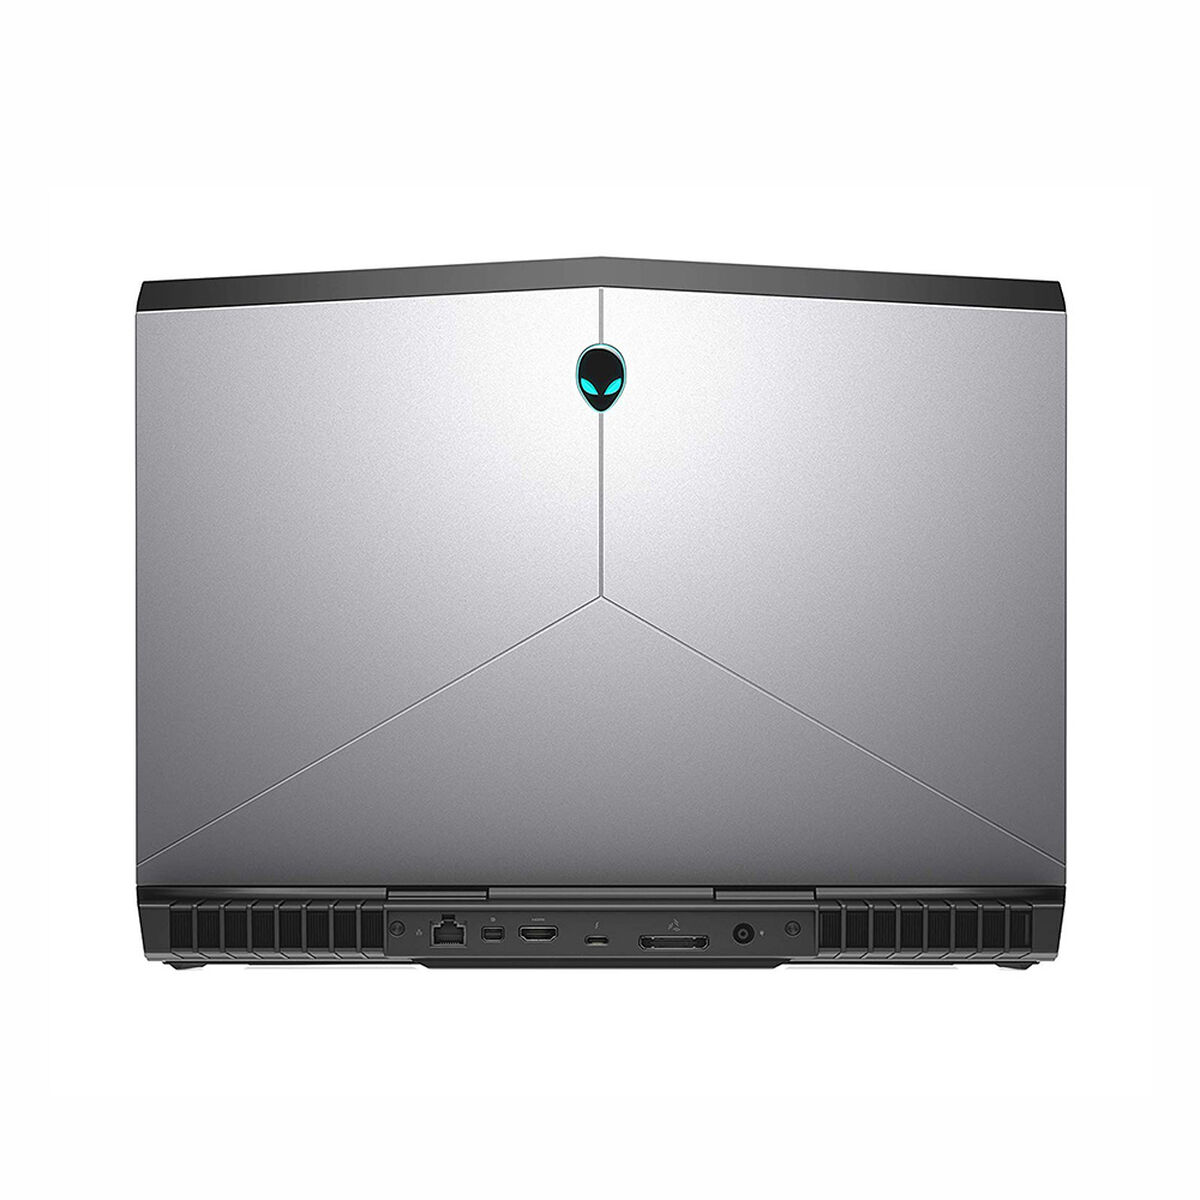 Notebook Gamer Dell Alienware 15 R4 Core i7-8750H 16GB 1TB+256GB SSD 15.6" NVIDIA GTX1070